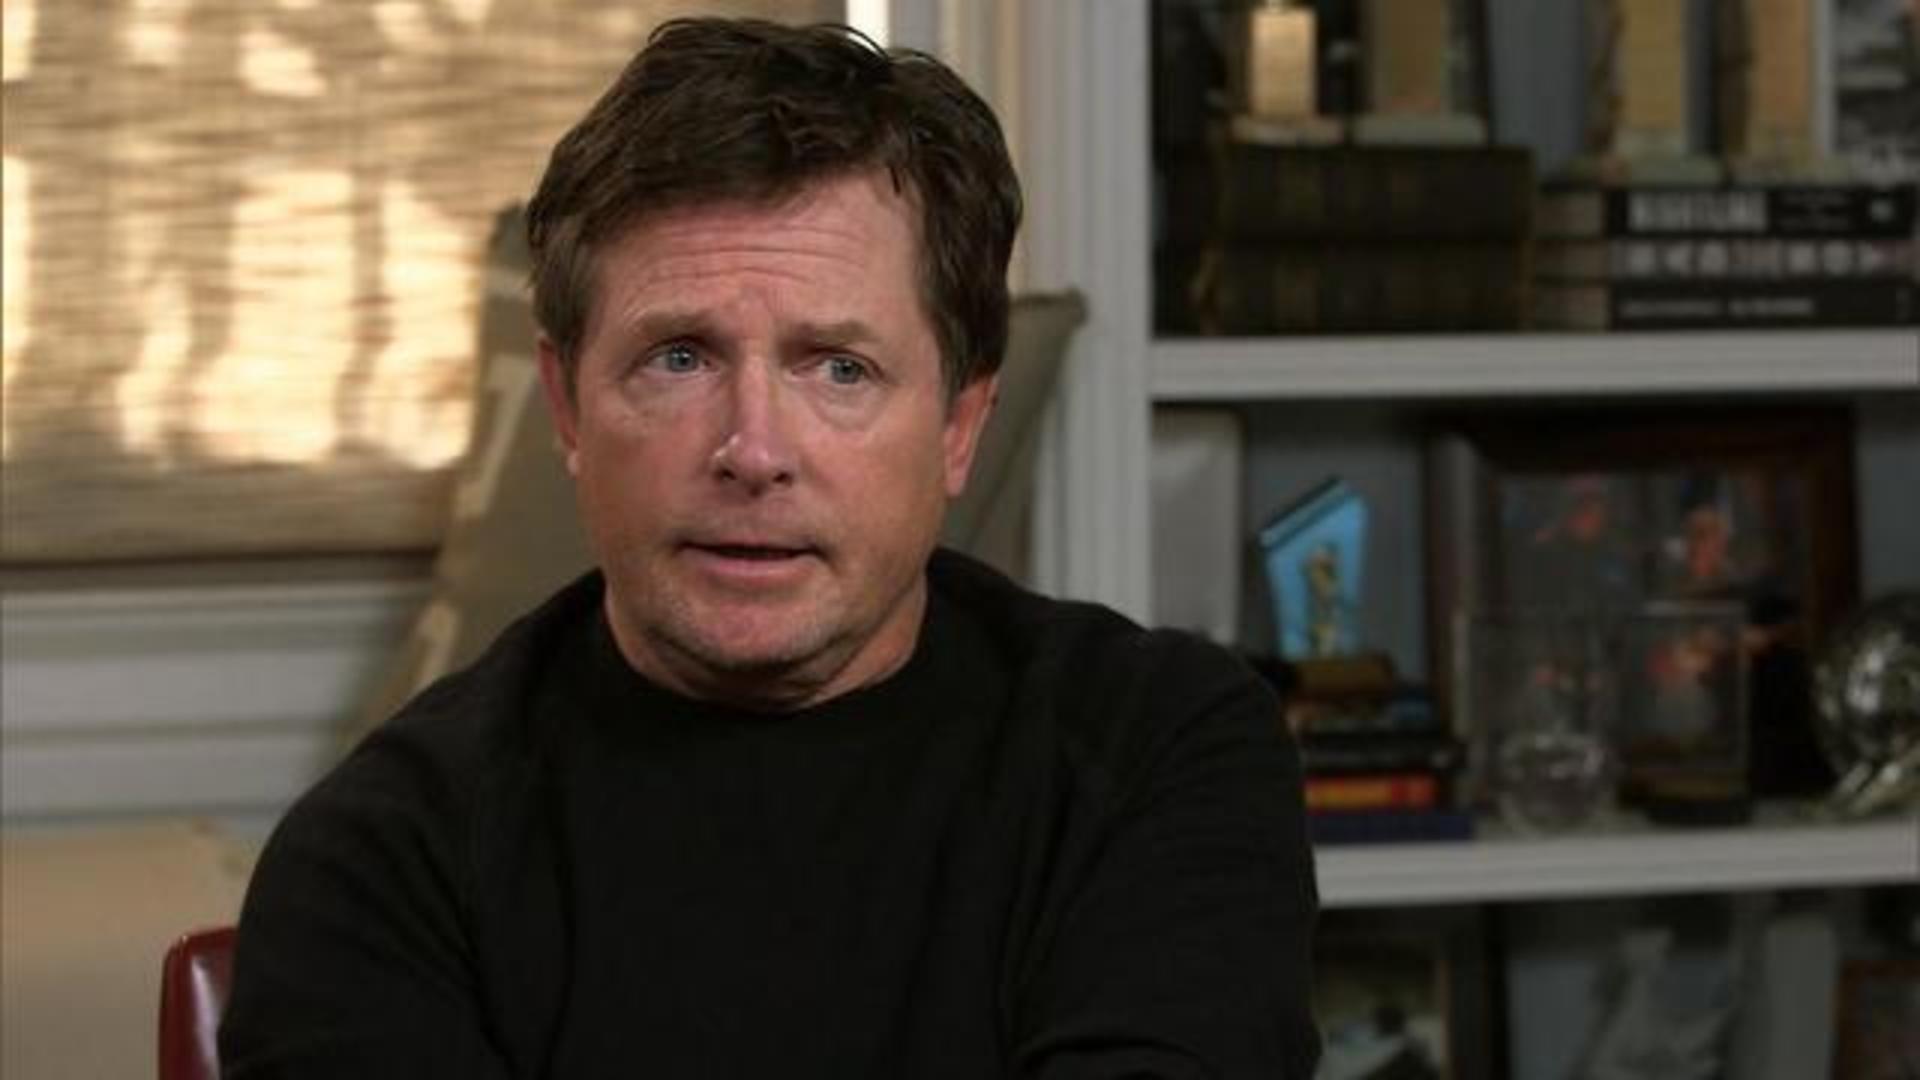 Michael J. Fox: Parkinson's "sucks" - CBS News